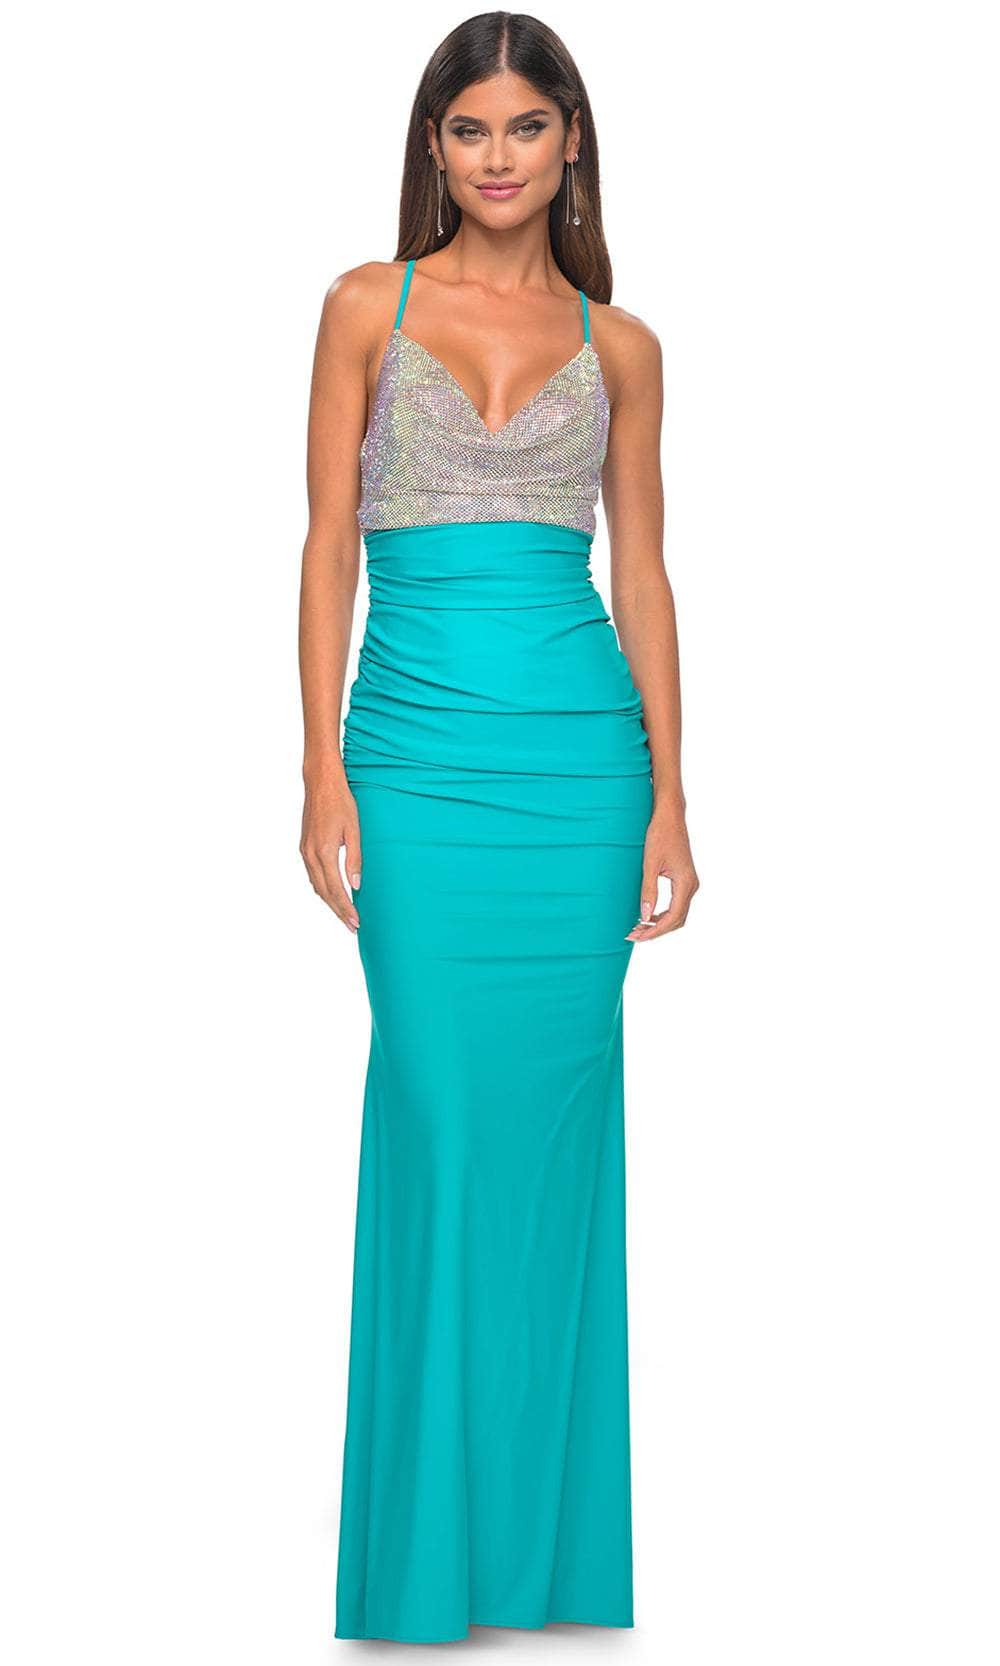 La Femme 32320 - Draped Metallic Prom Dress
